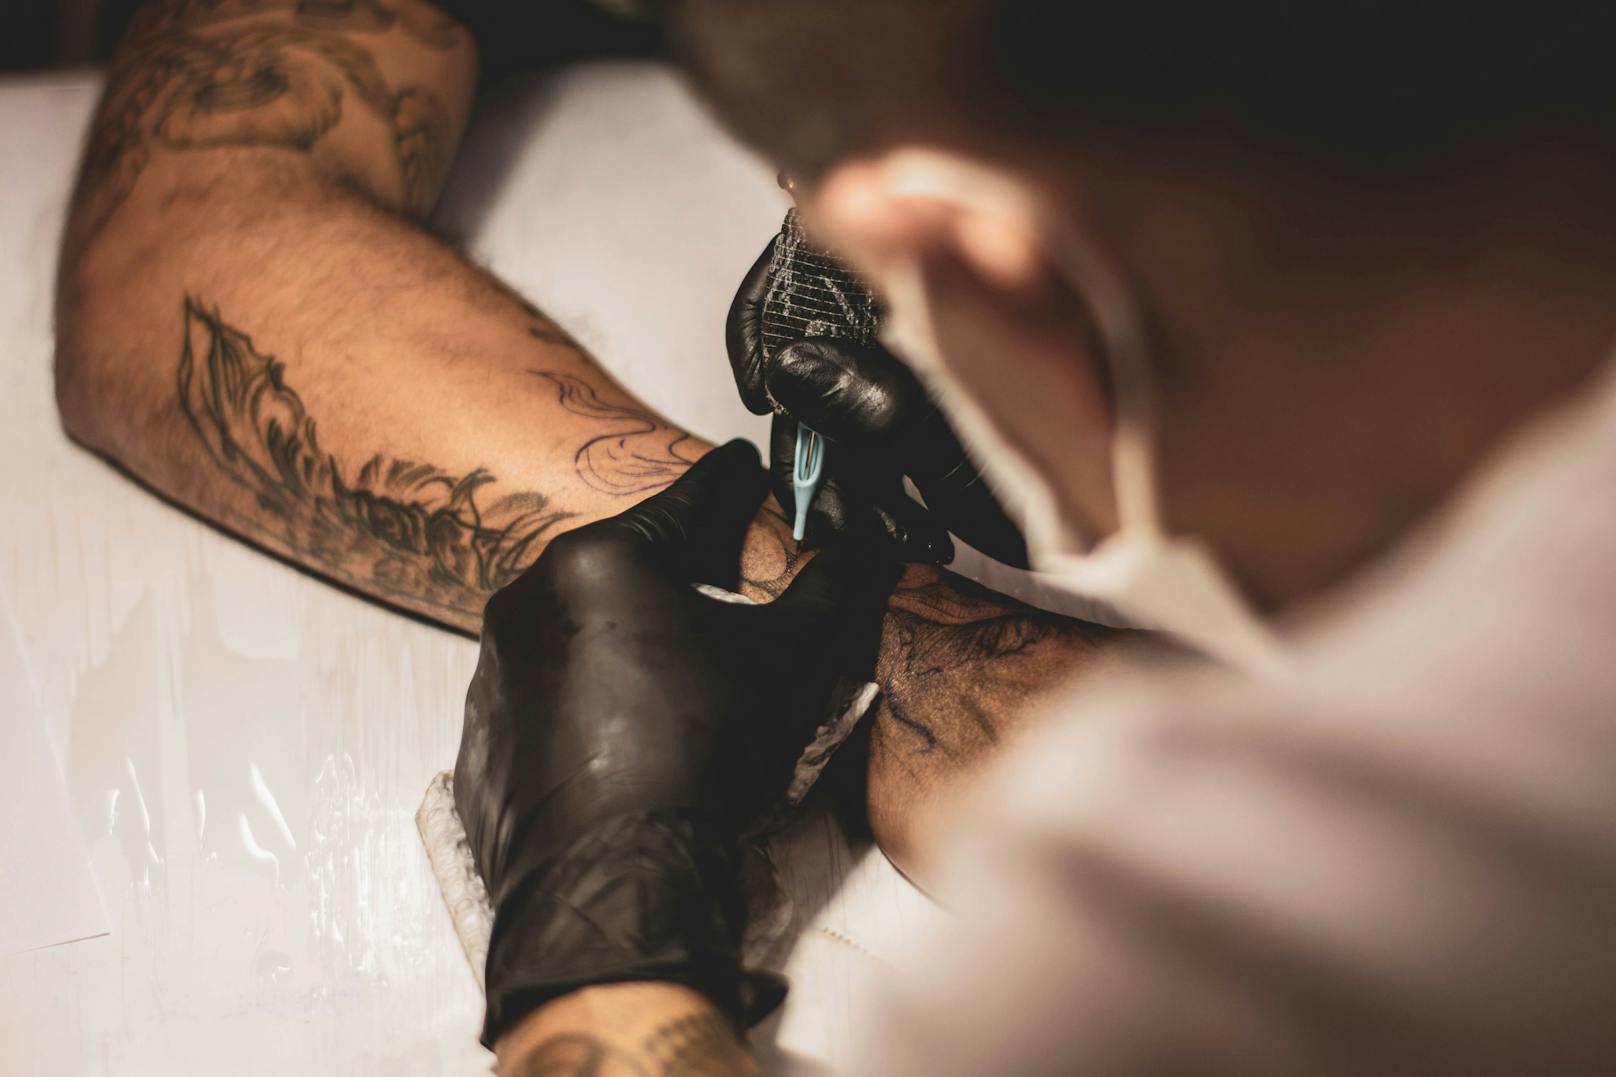 Tattoos sind schmerzhaft und vor allem langlebig - jetzt gibt es Ephemeral Tattoos in New York, die sich in Luft auflösen. (Symbolbild)